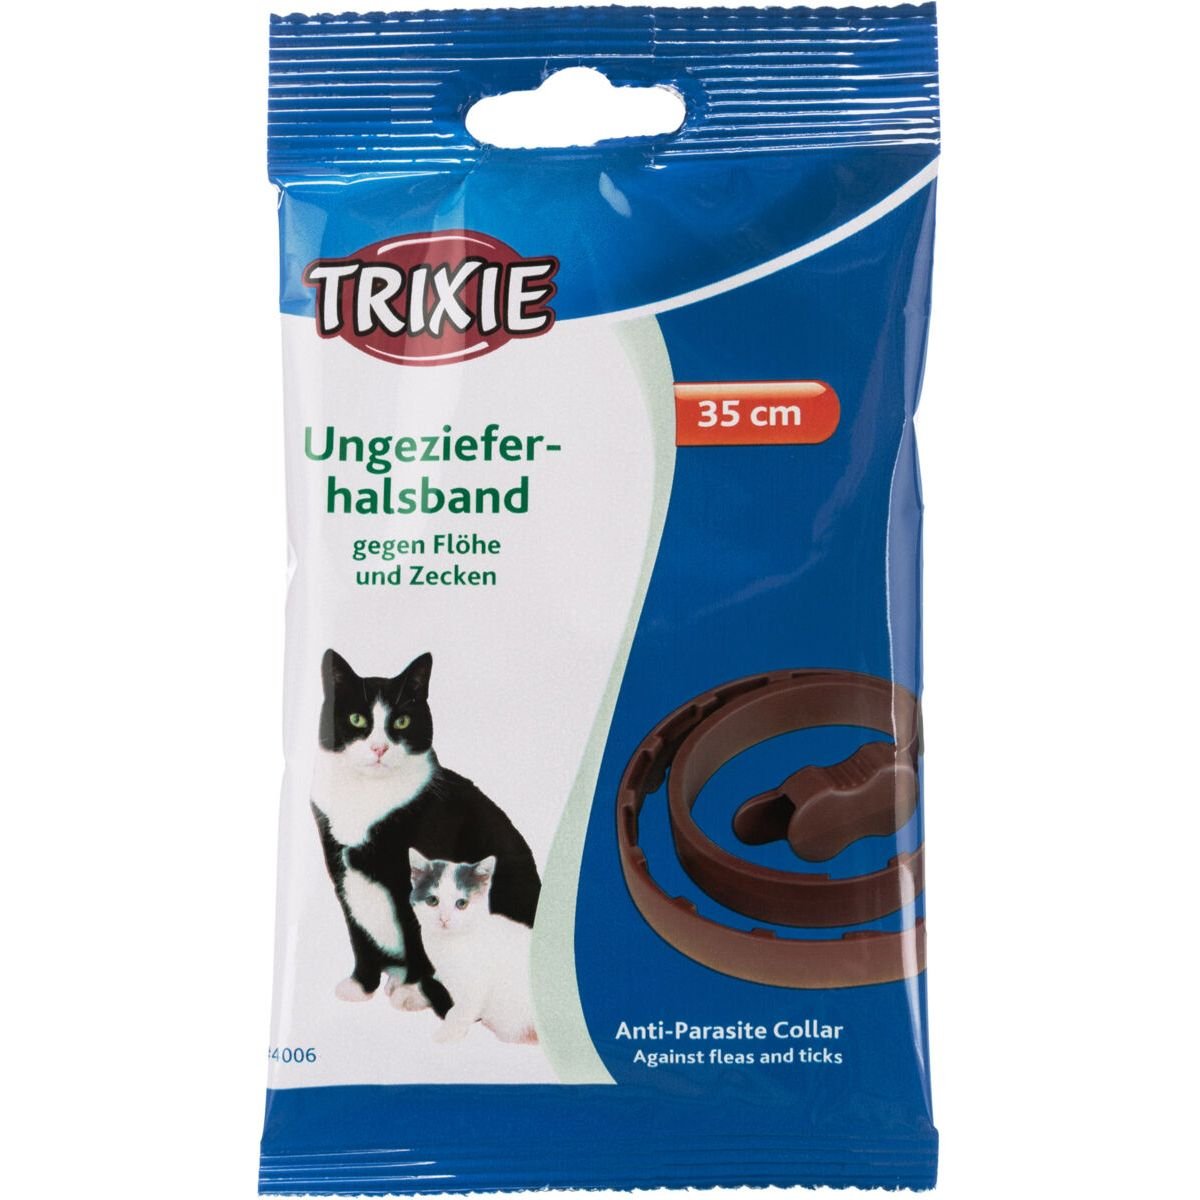 Био-ошейник антипаразитарный Trixie Flea & Tick Collar для кошек, 35 см - фото 2